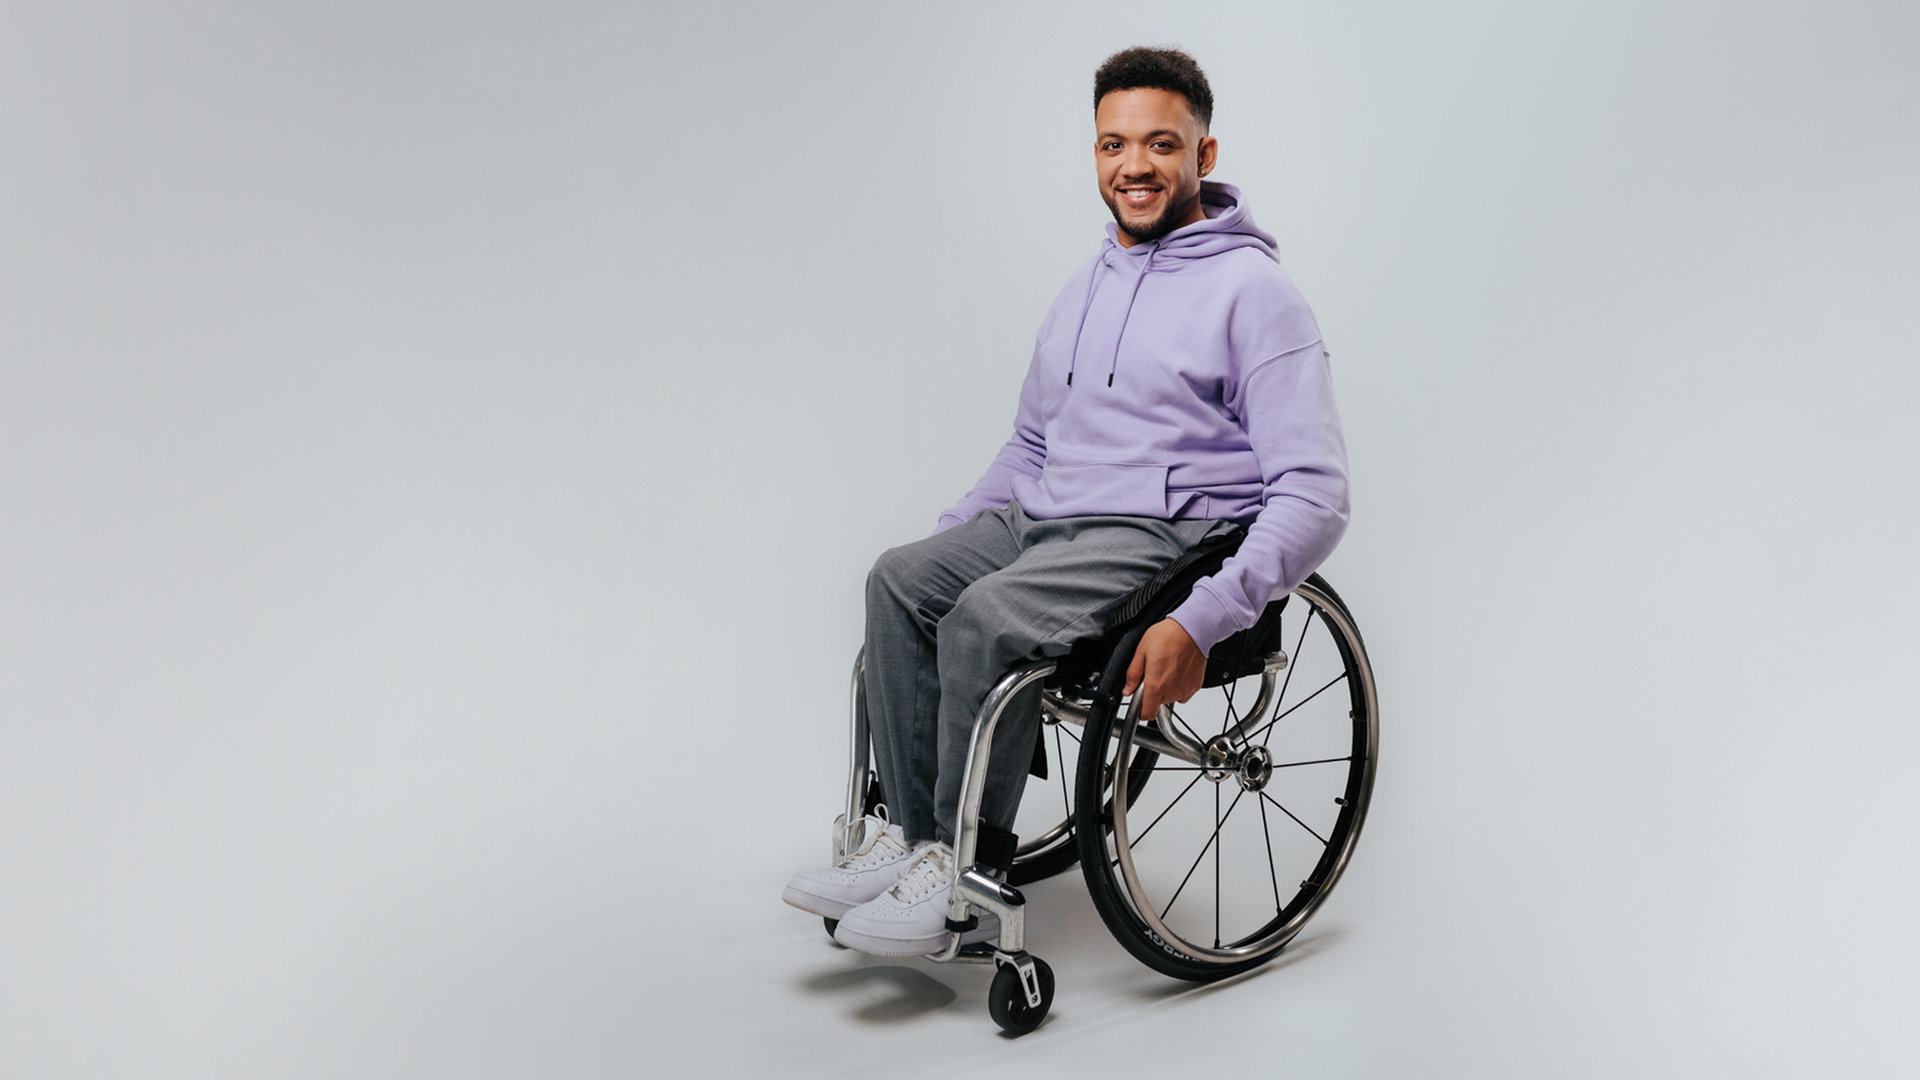 Sein Rollstuhl hat ihn nie gebremst: Leeroy Matata | NDR.de ...